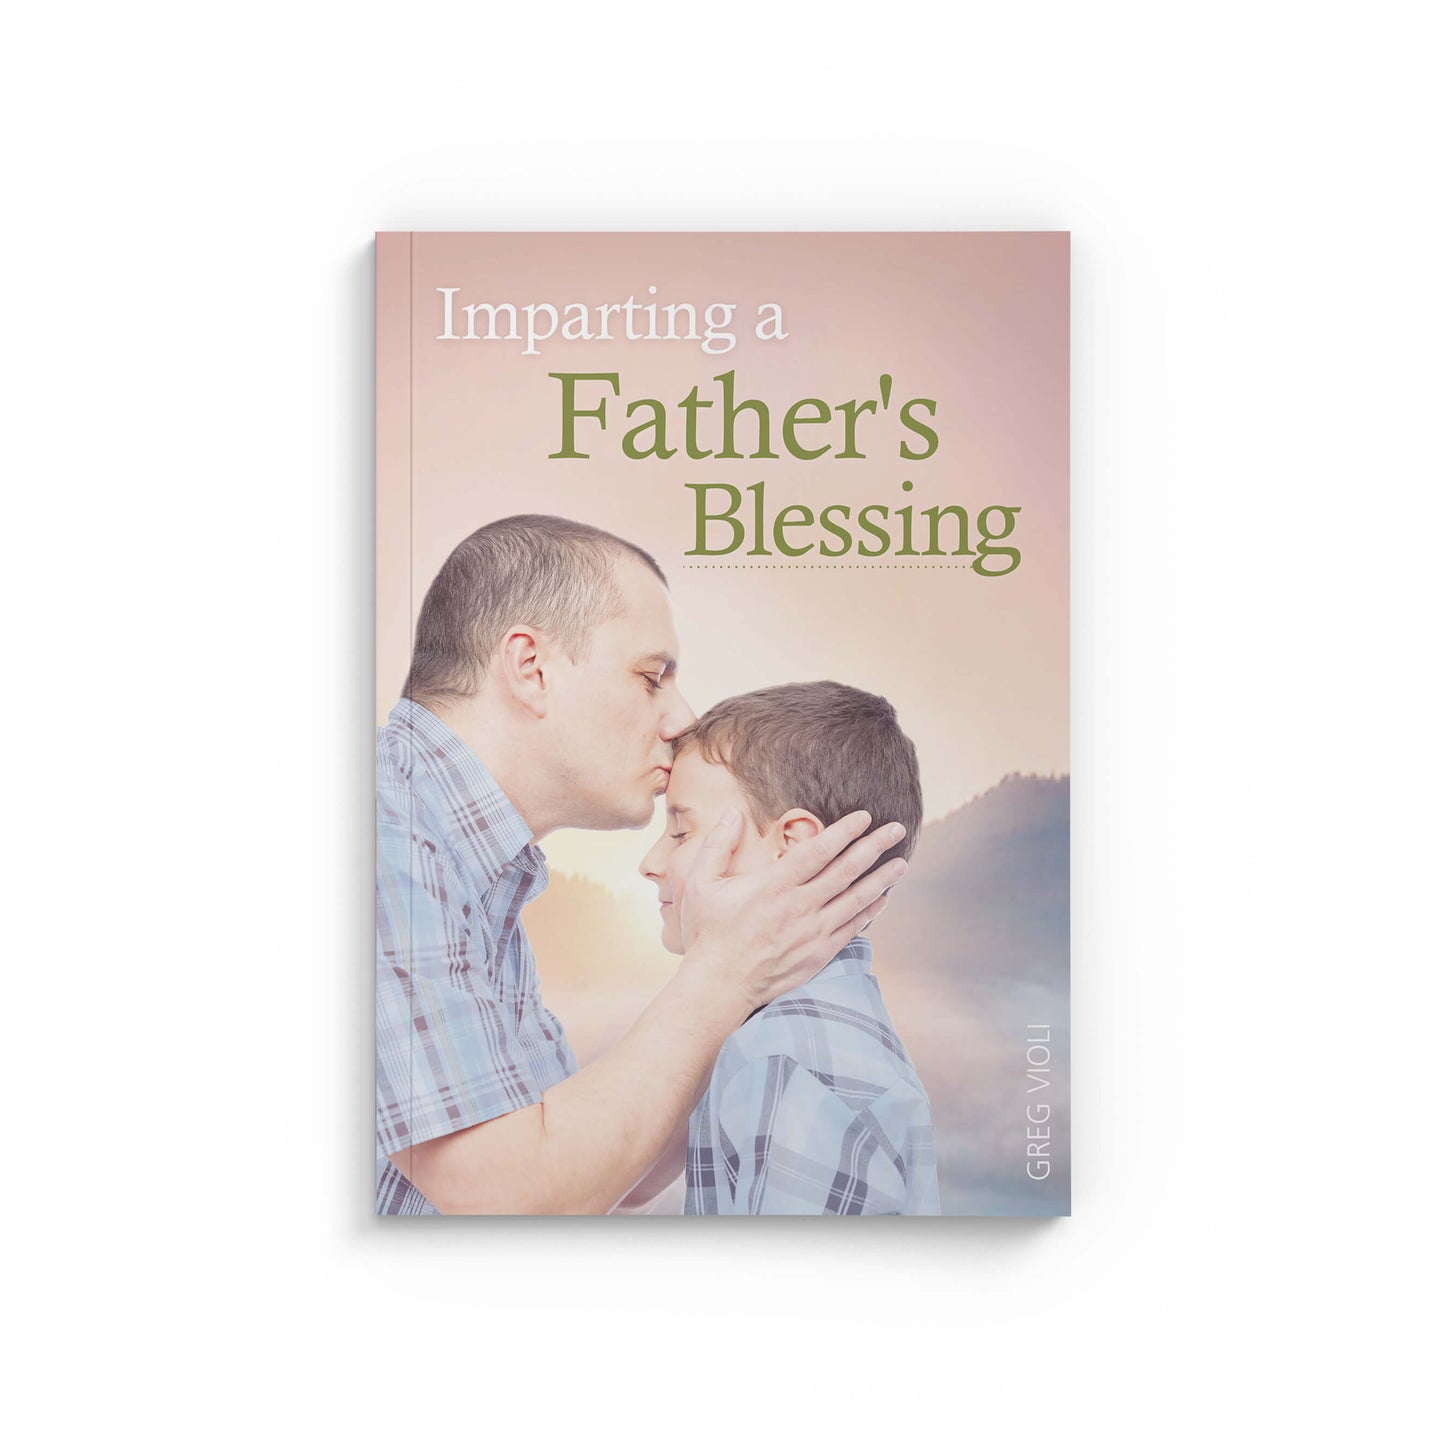 Imparting a Father's Blessing (nur auf Englisch erhältlich)